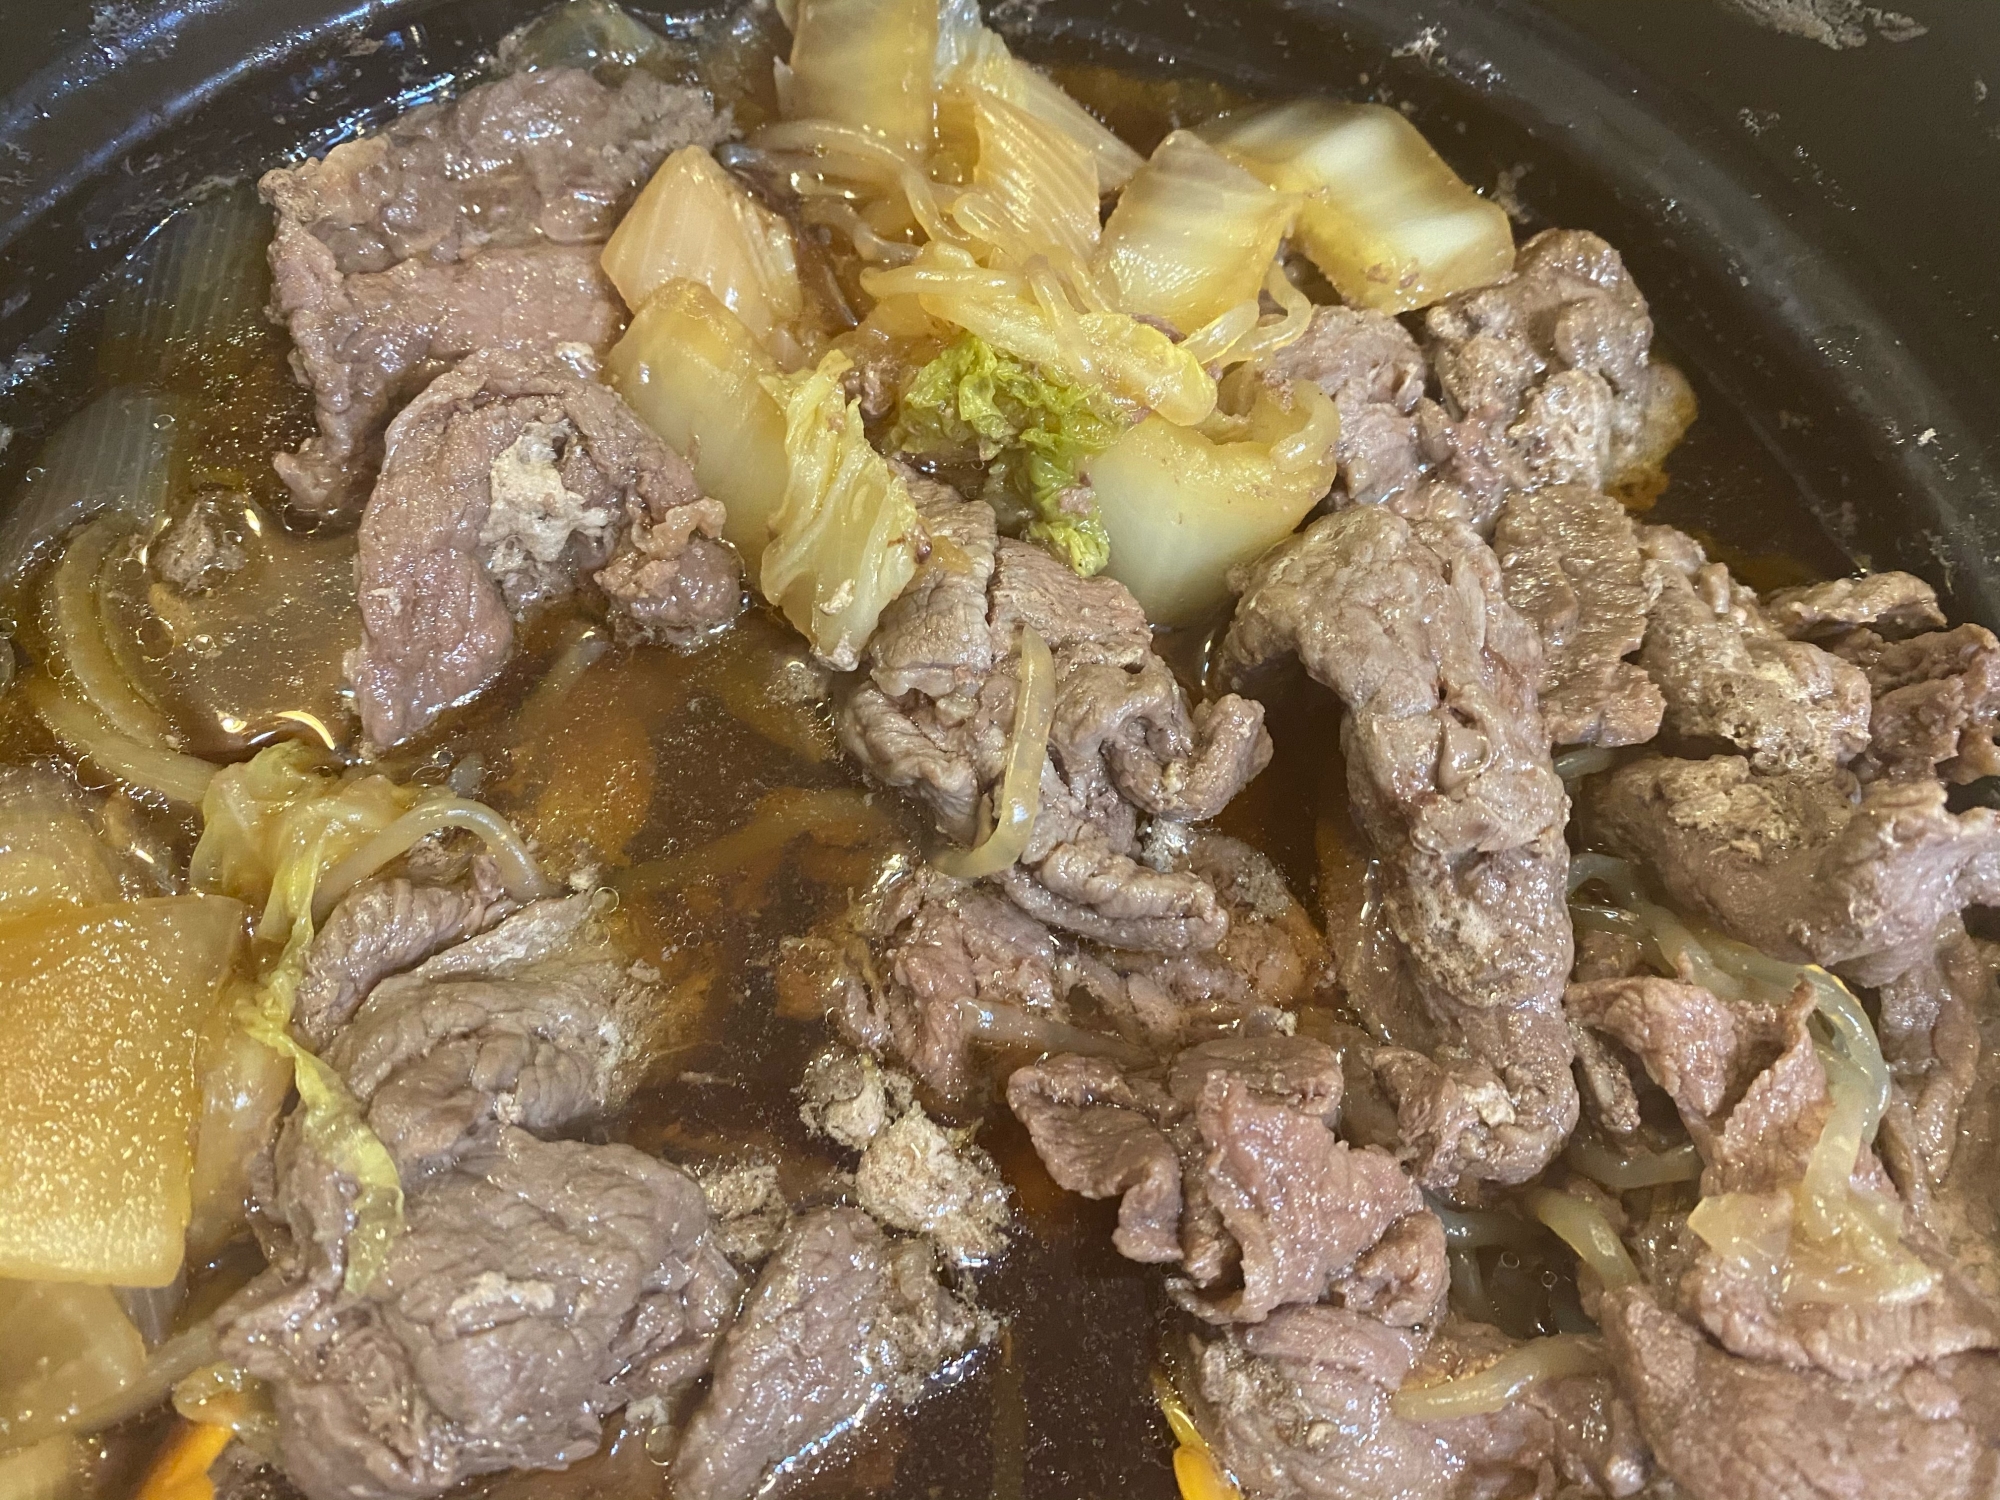 牛肉と白菜の鍋